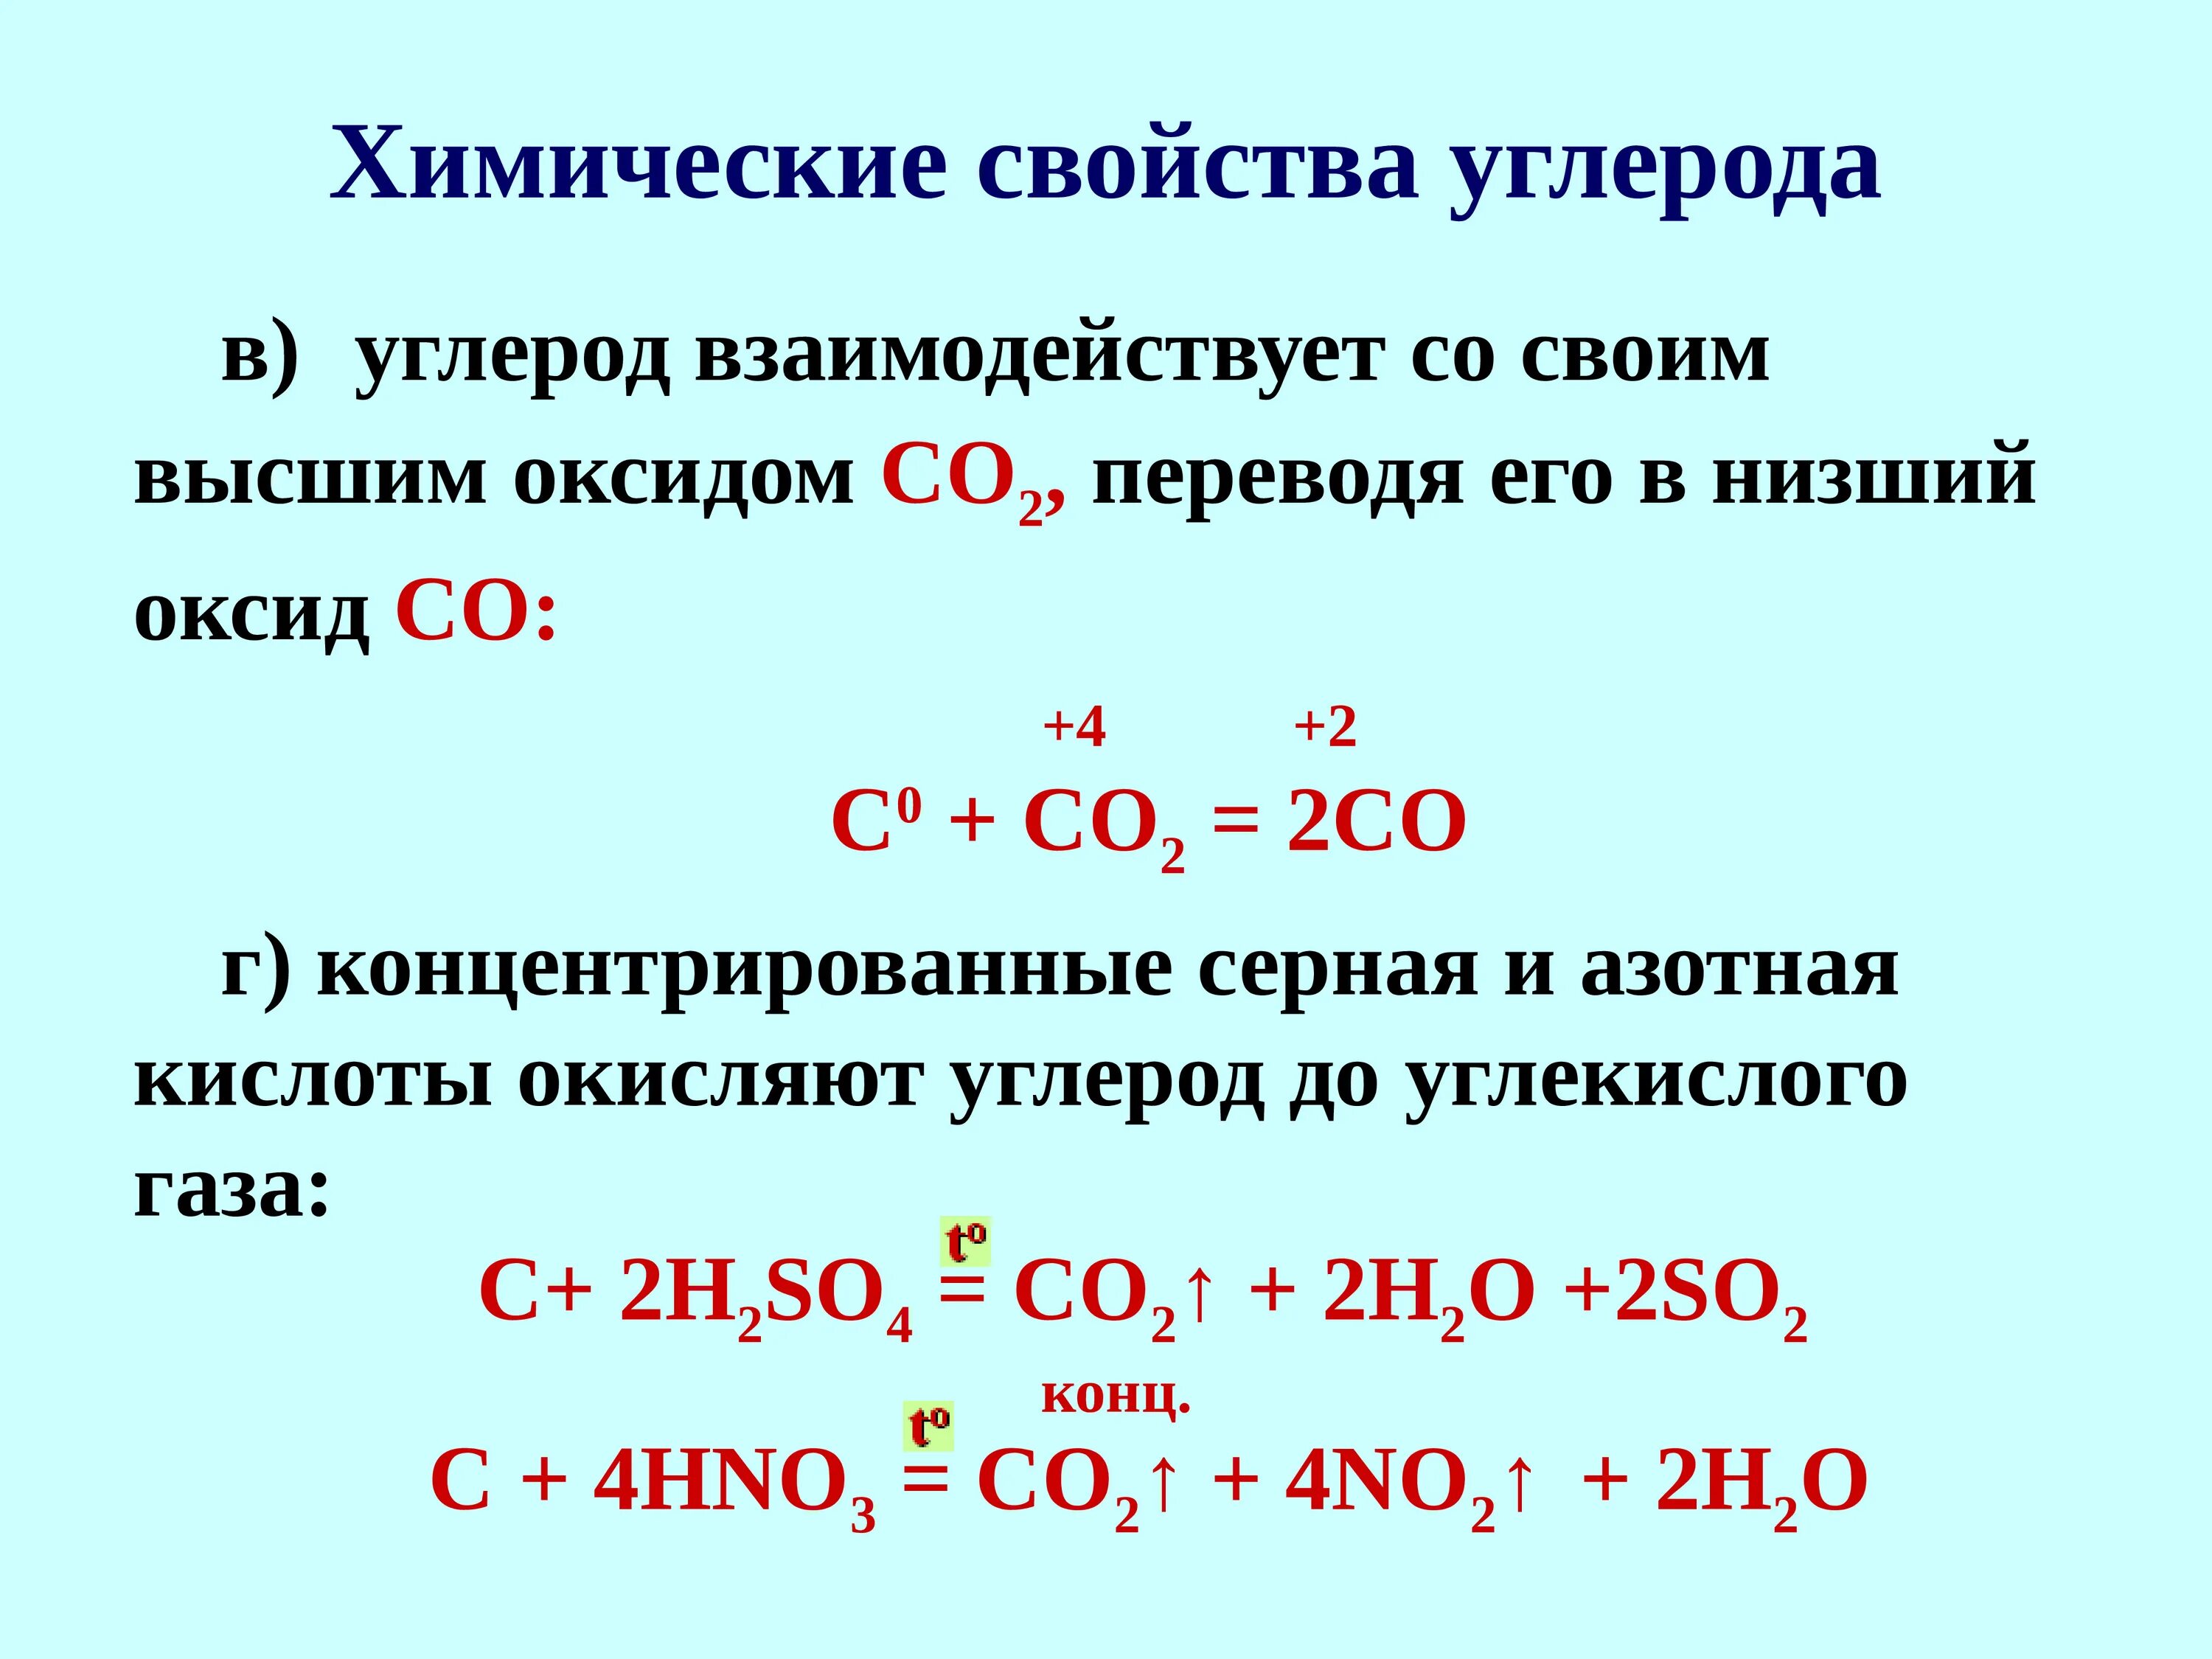 Химические свойства 2 а группы. Углерод плюс азотная концентрированная. Углерод плюс концентрированная серной кислота. Взаимодействие углерода с концентрированной серной кислотой. Углерод взаимодействует с кислотами.